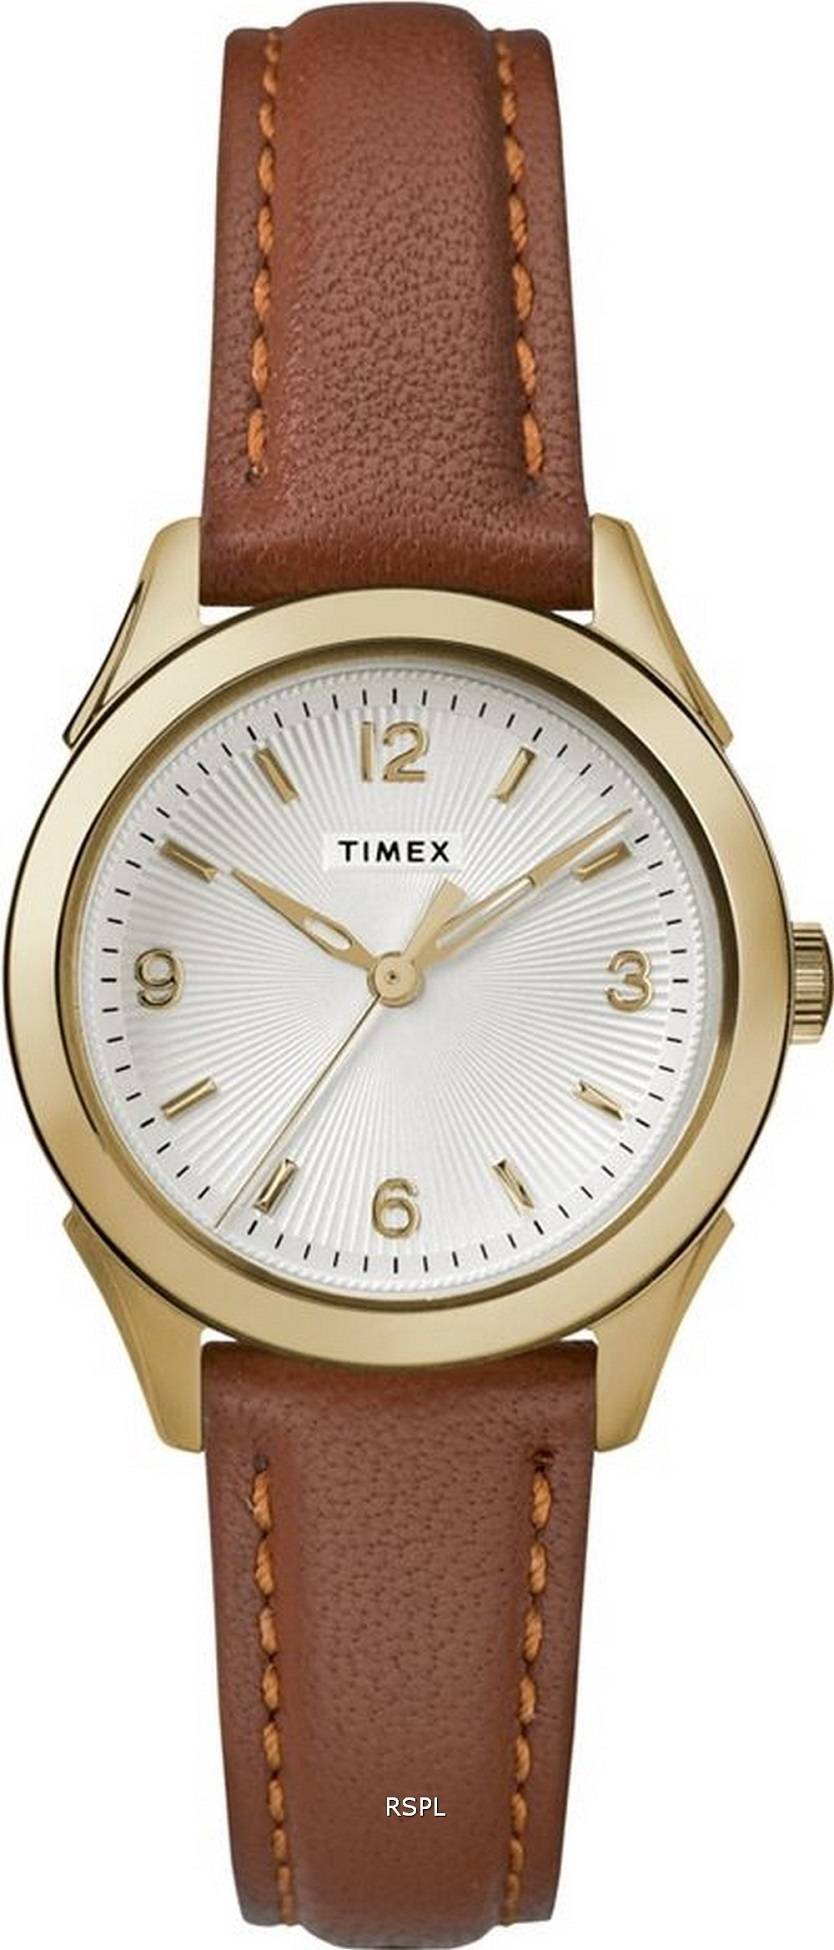 타이멕스 토링턴 은 다이얼 가죽 스트랩 쿼츠 TW2R91100 여성용 시계